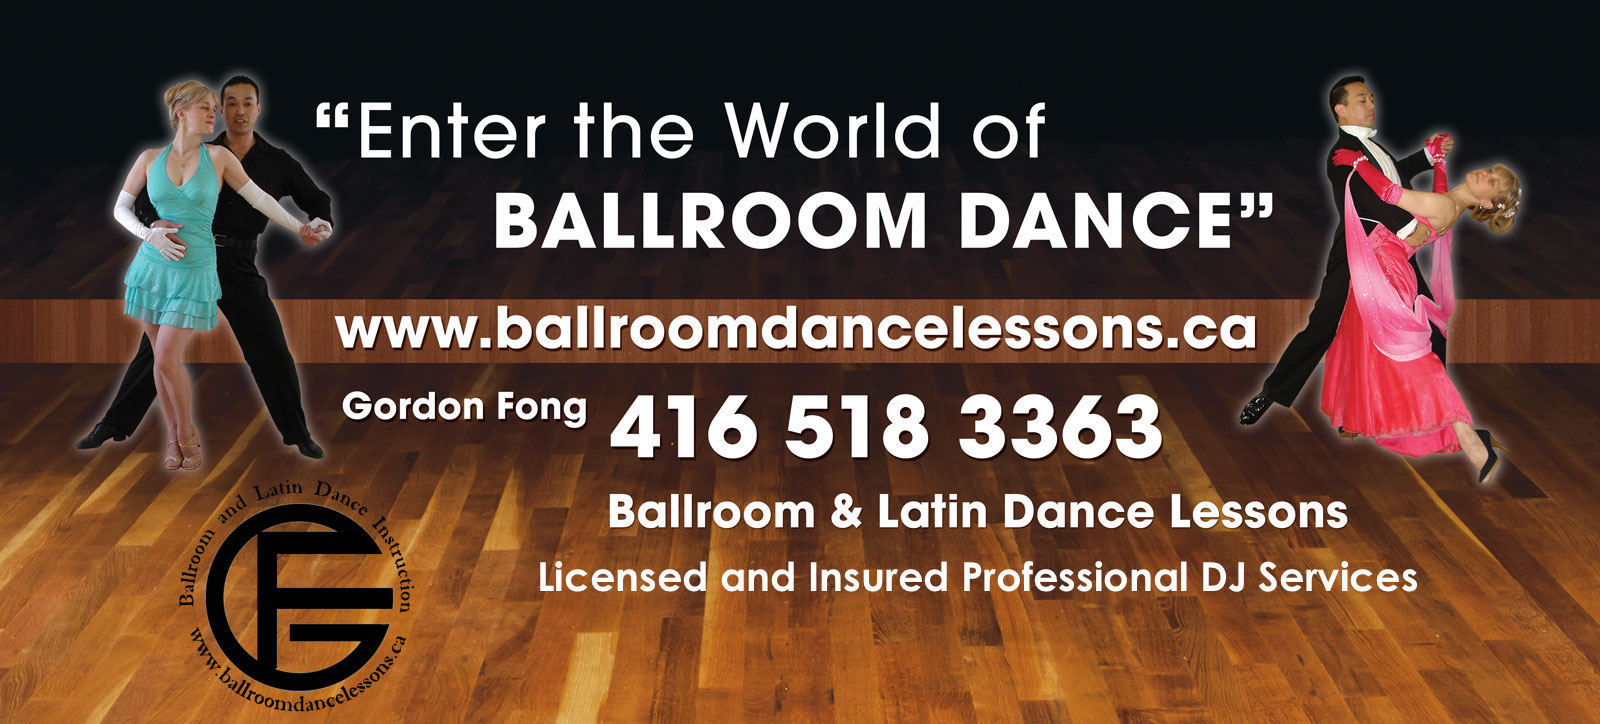 Enter the World of Ballroom Dance